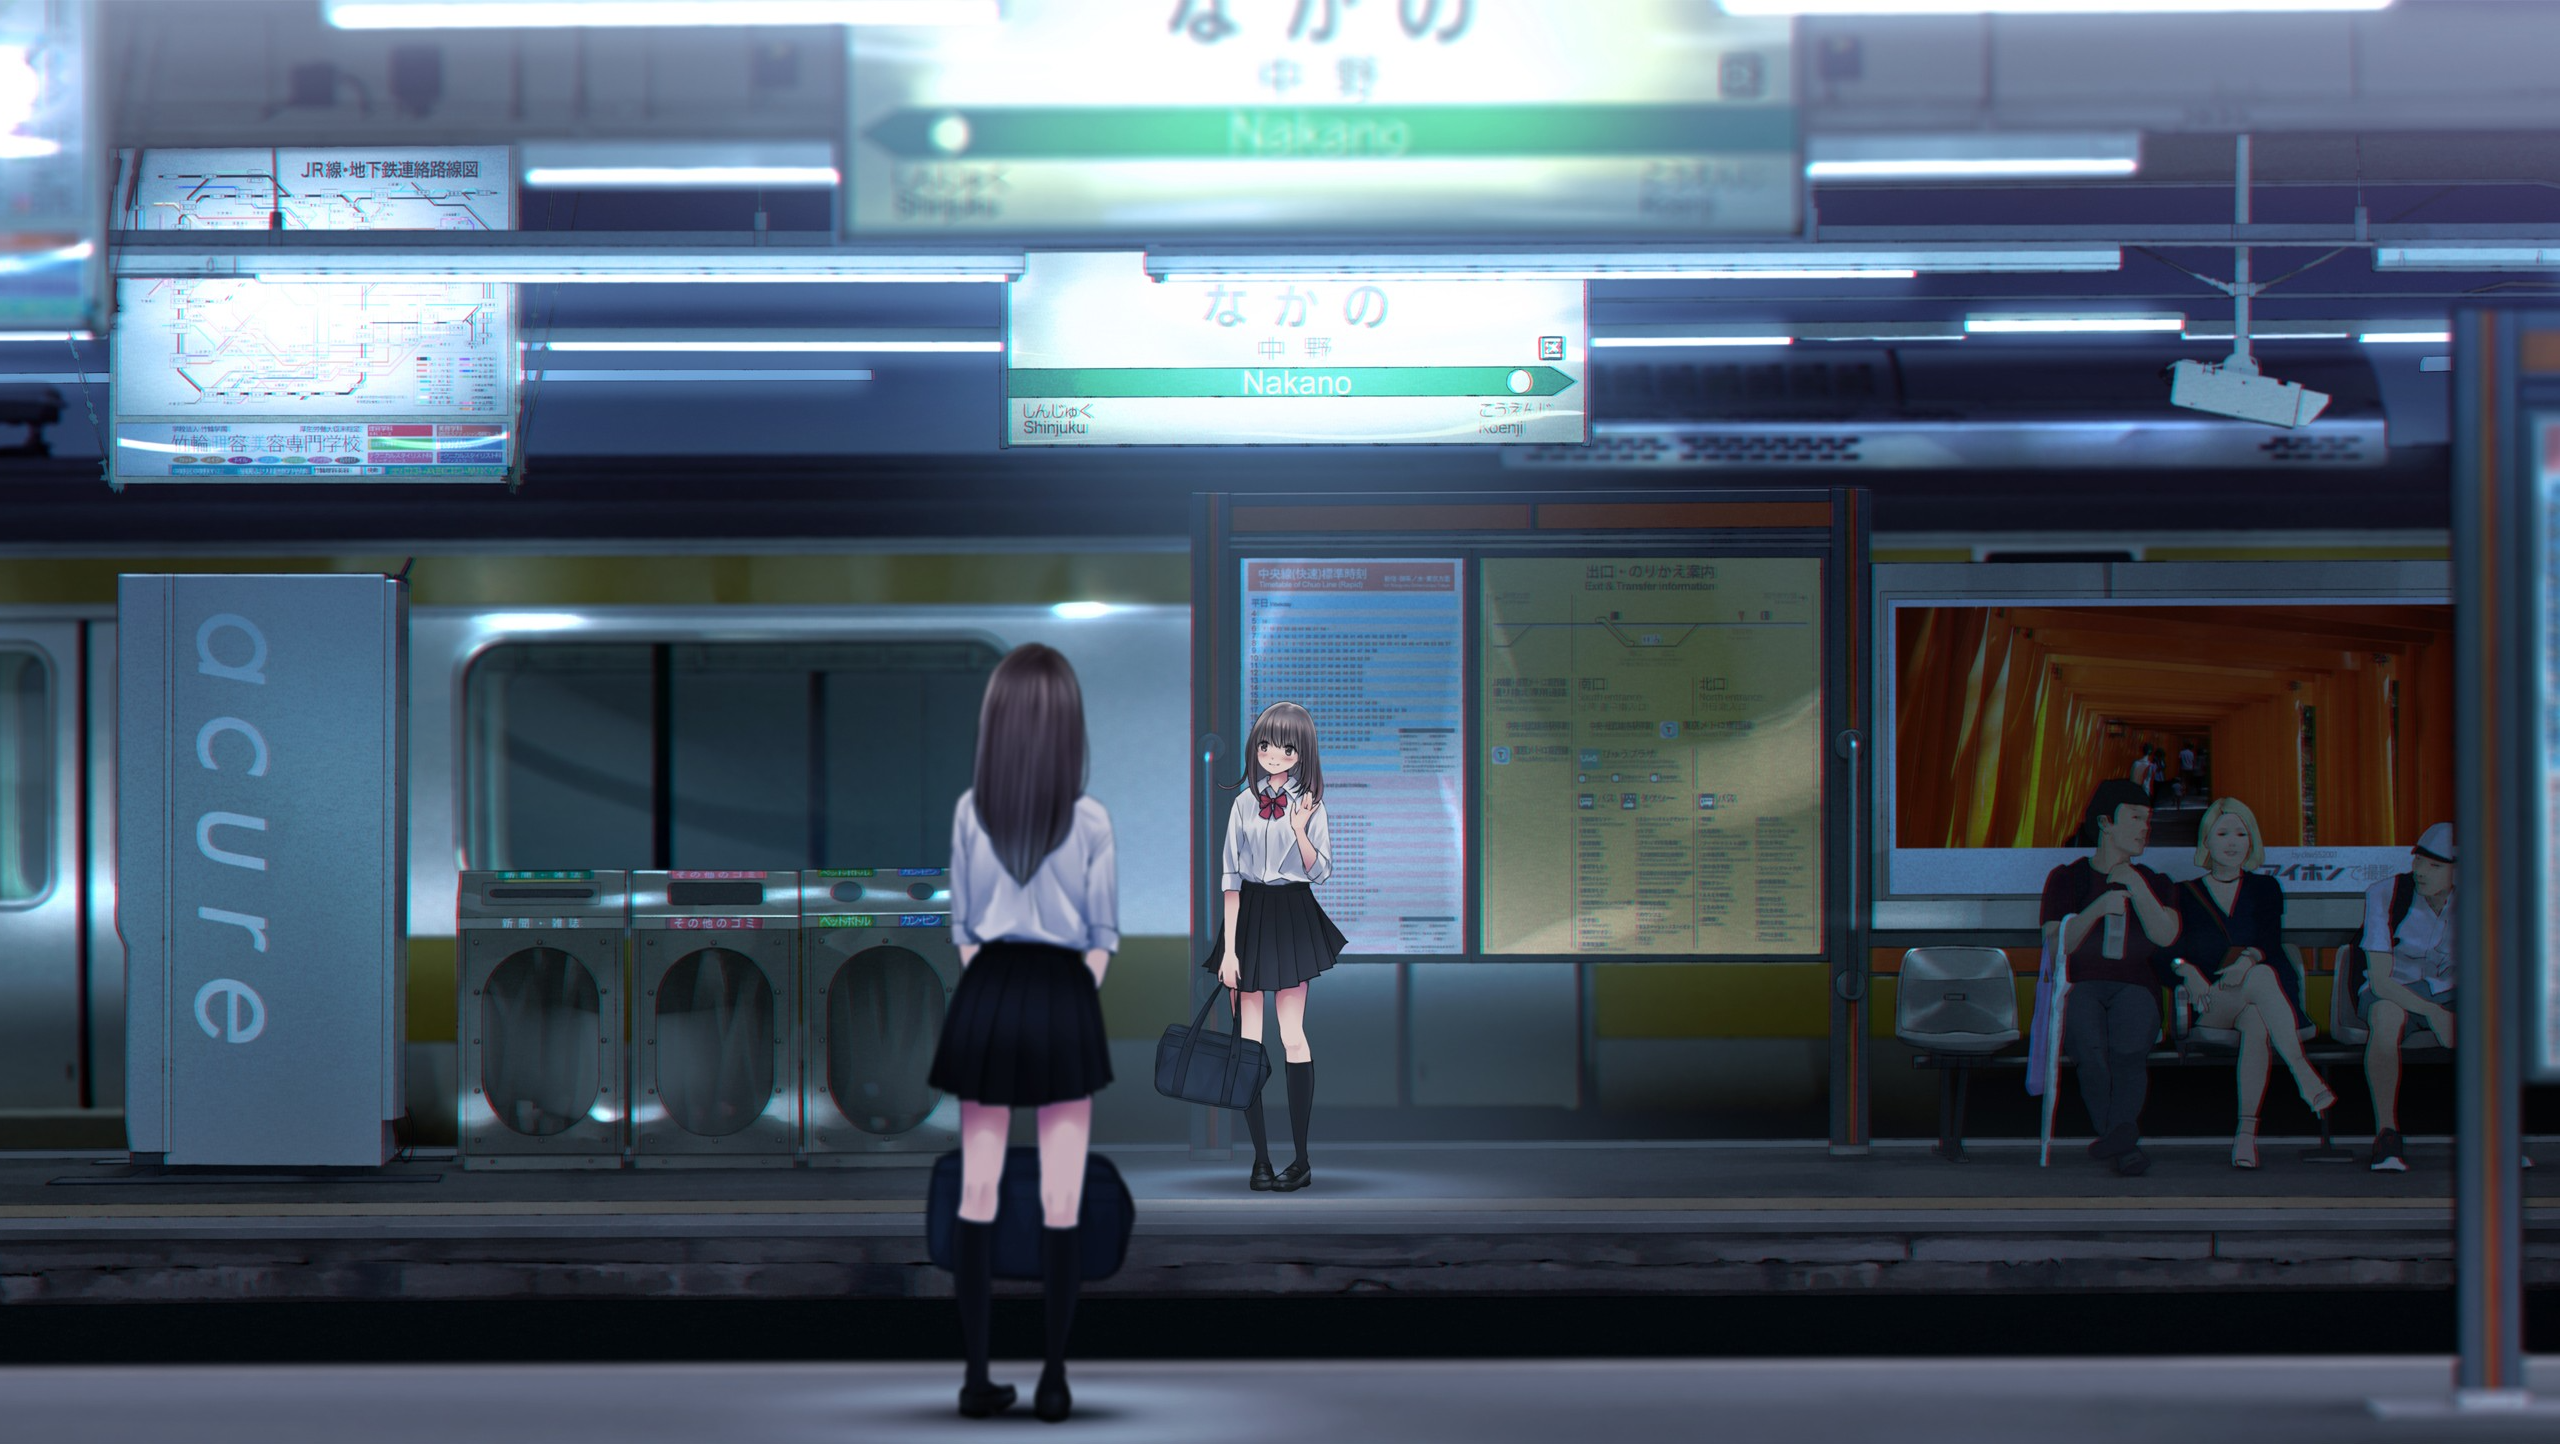 Anime Anime Girls Umbrella Skirt Heels Long Hair Train Station Brunette Black Socks Knee High Socks  2560x1444